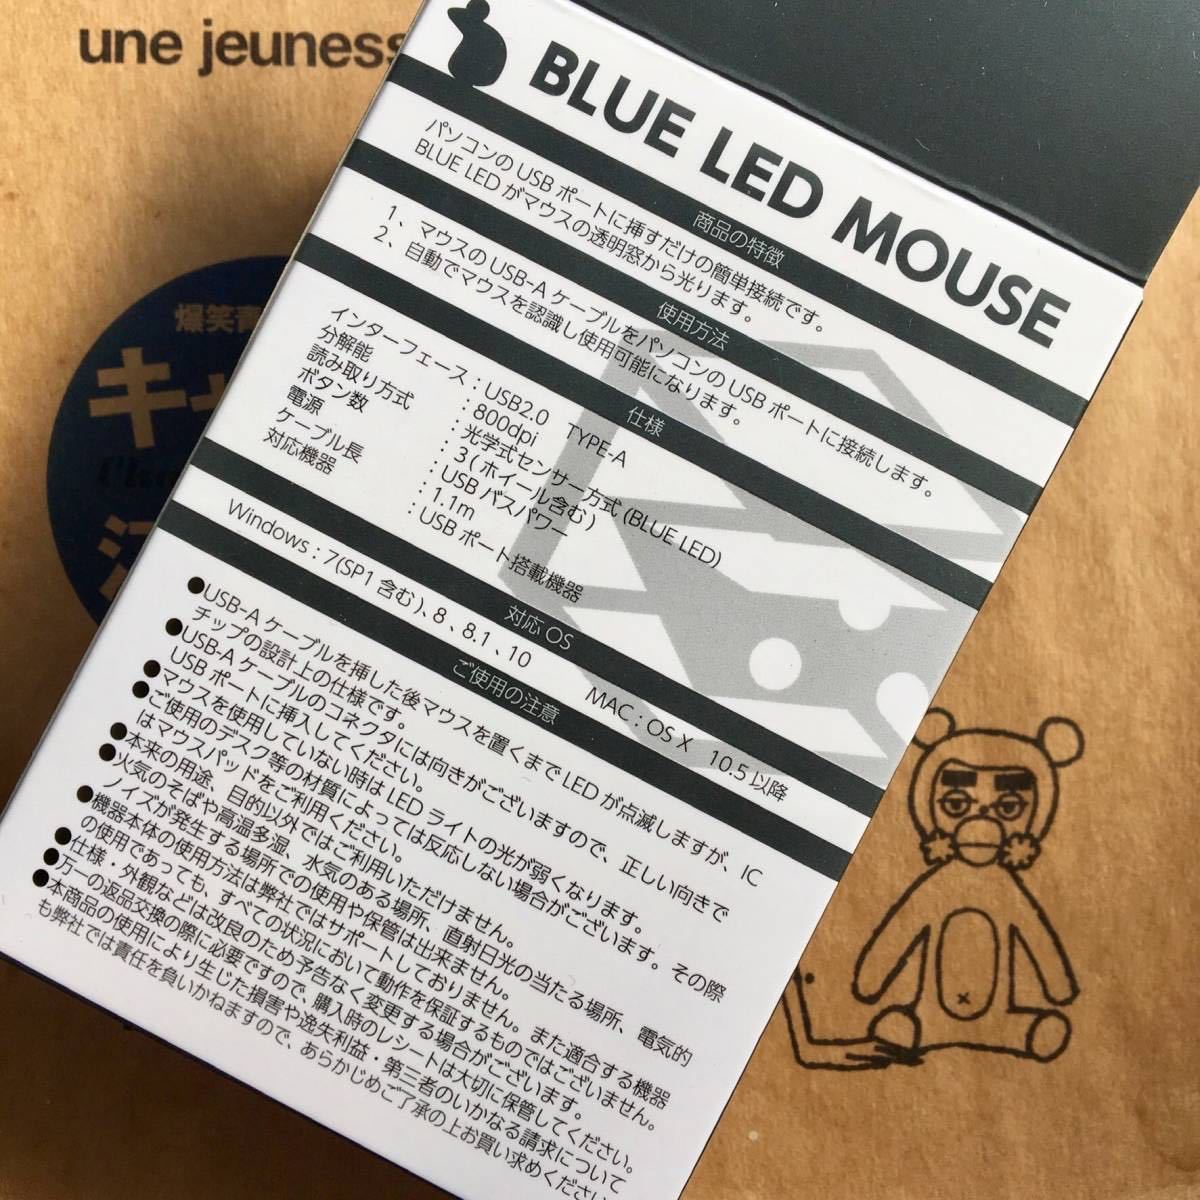 USB 光学式マウス 青色LED BLUE LED MOUSE 有線マウス #2 在宅勤務 テレワーク リモートワーク 遠隔授業 リモート授業_画像2